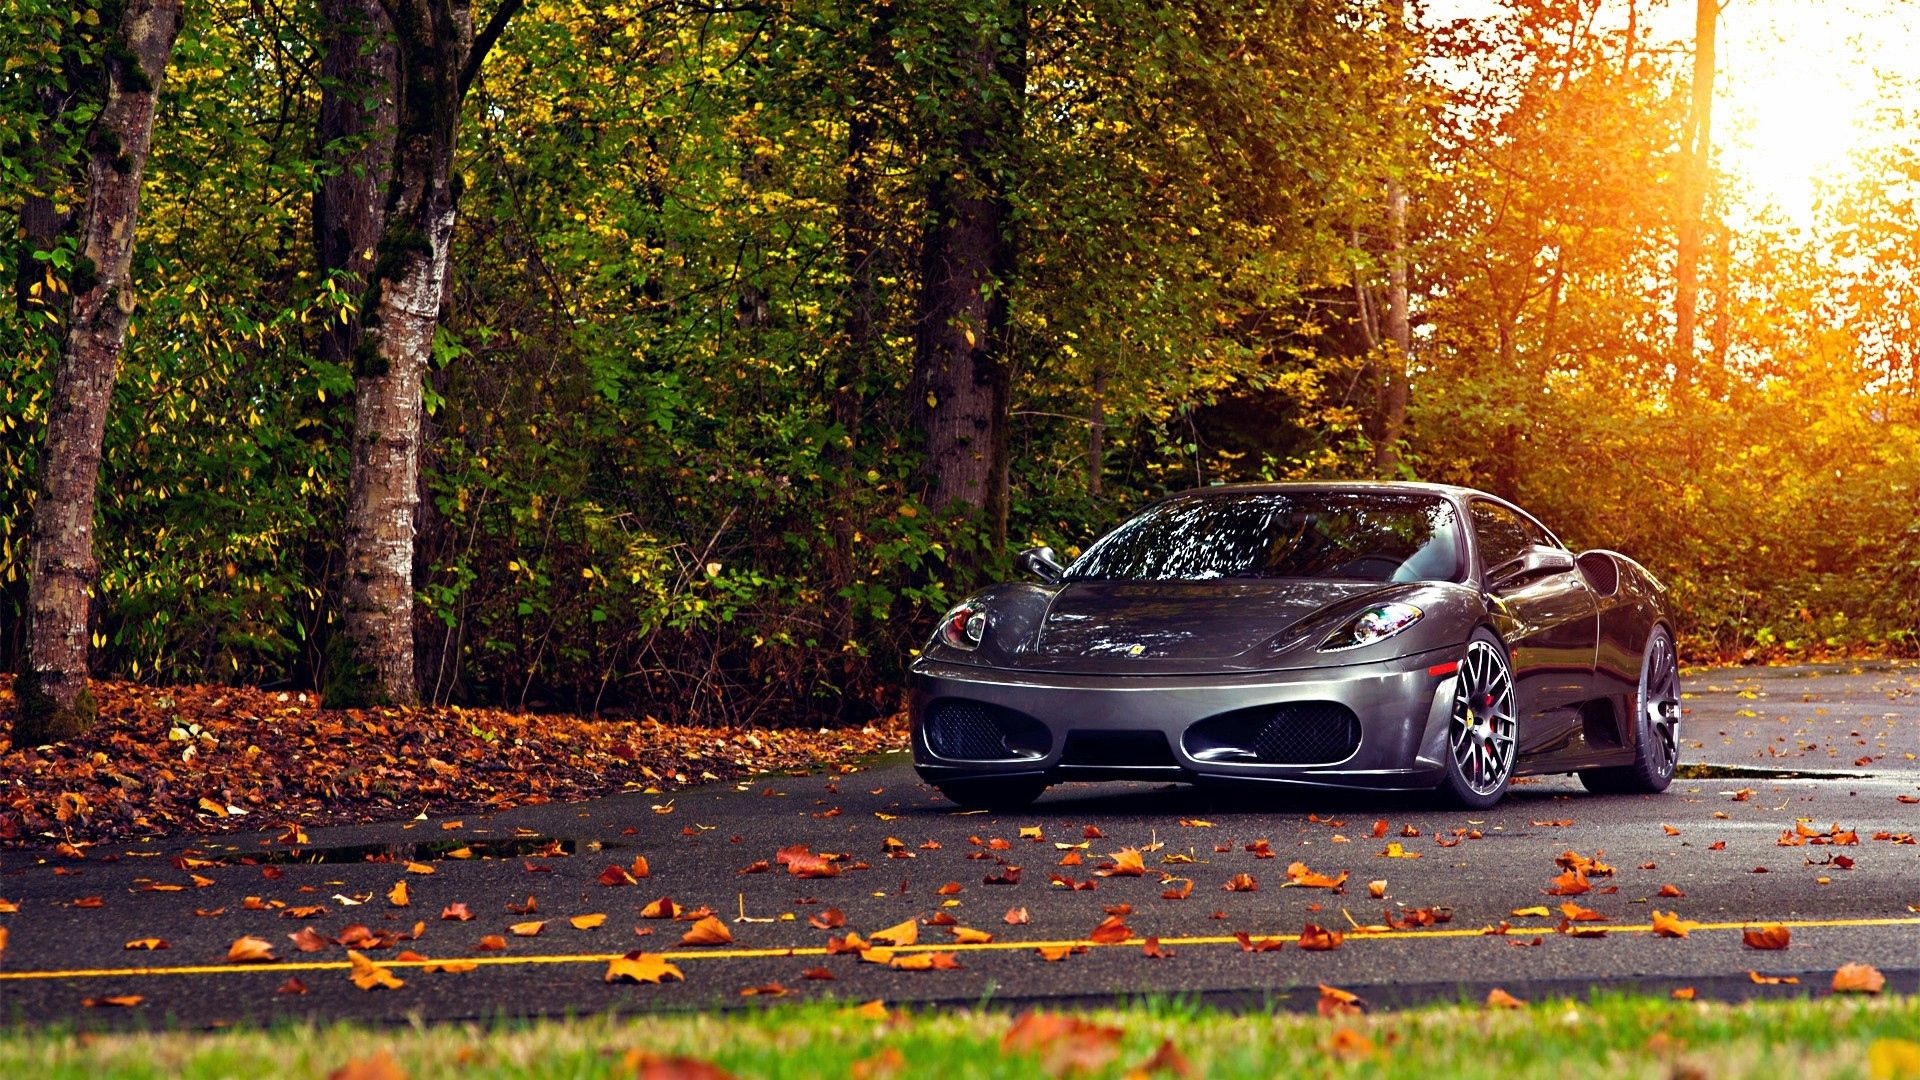 Скачать картинку Ferrari F430 Scuderia, Тачки (Cars), Деревья, Листья, Феррари (Ferrari), Осень в телефон бесплатно.